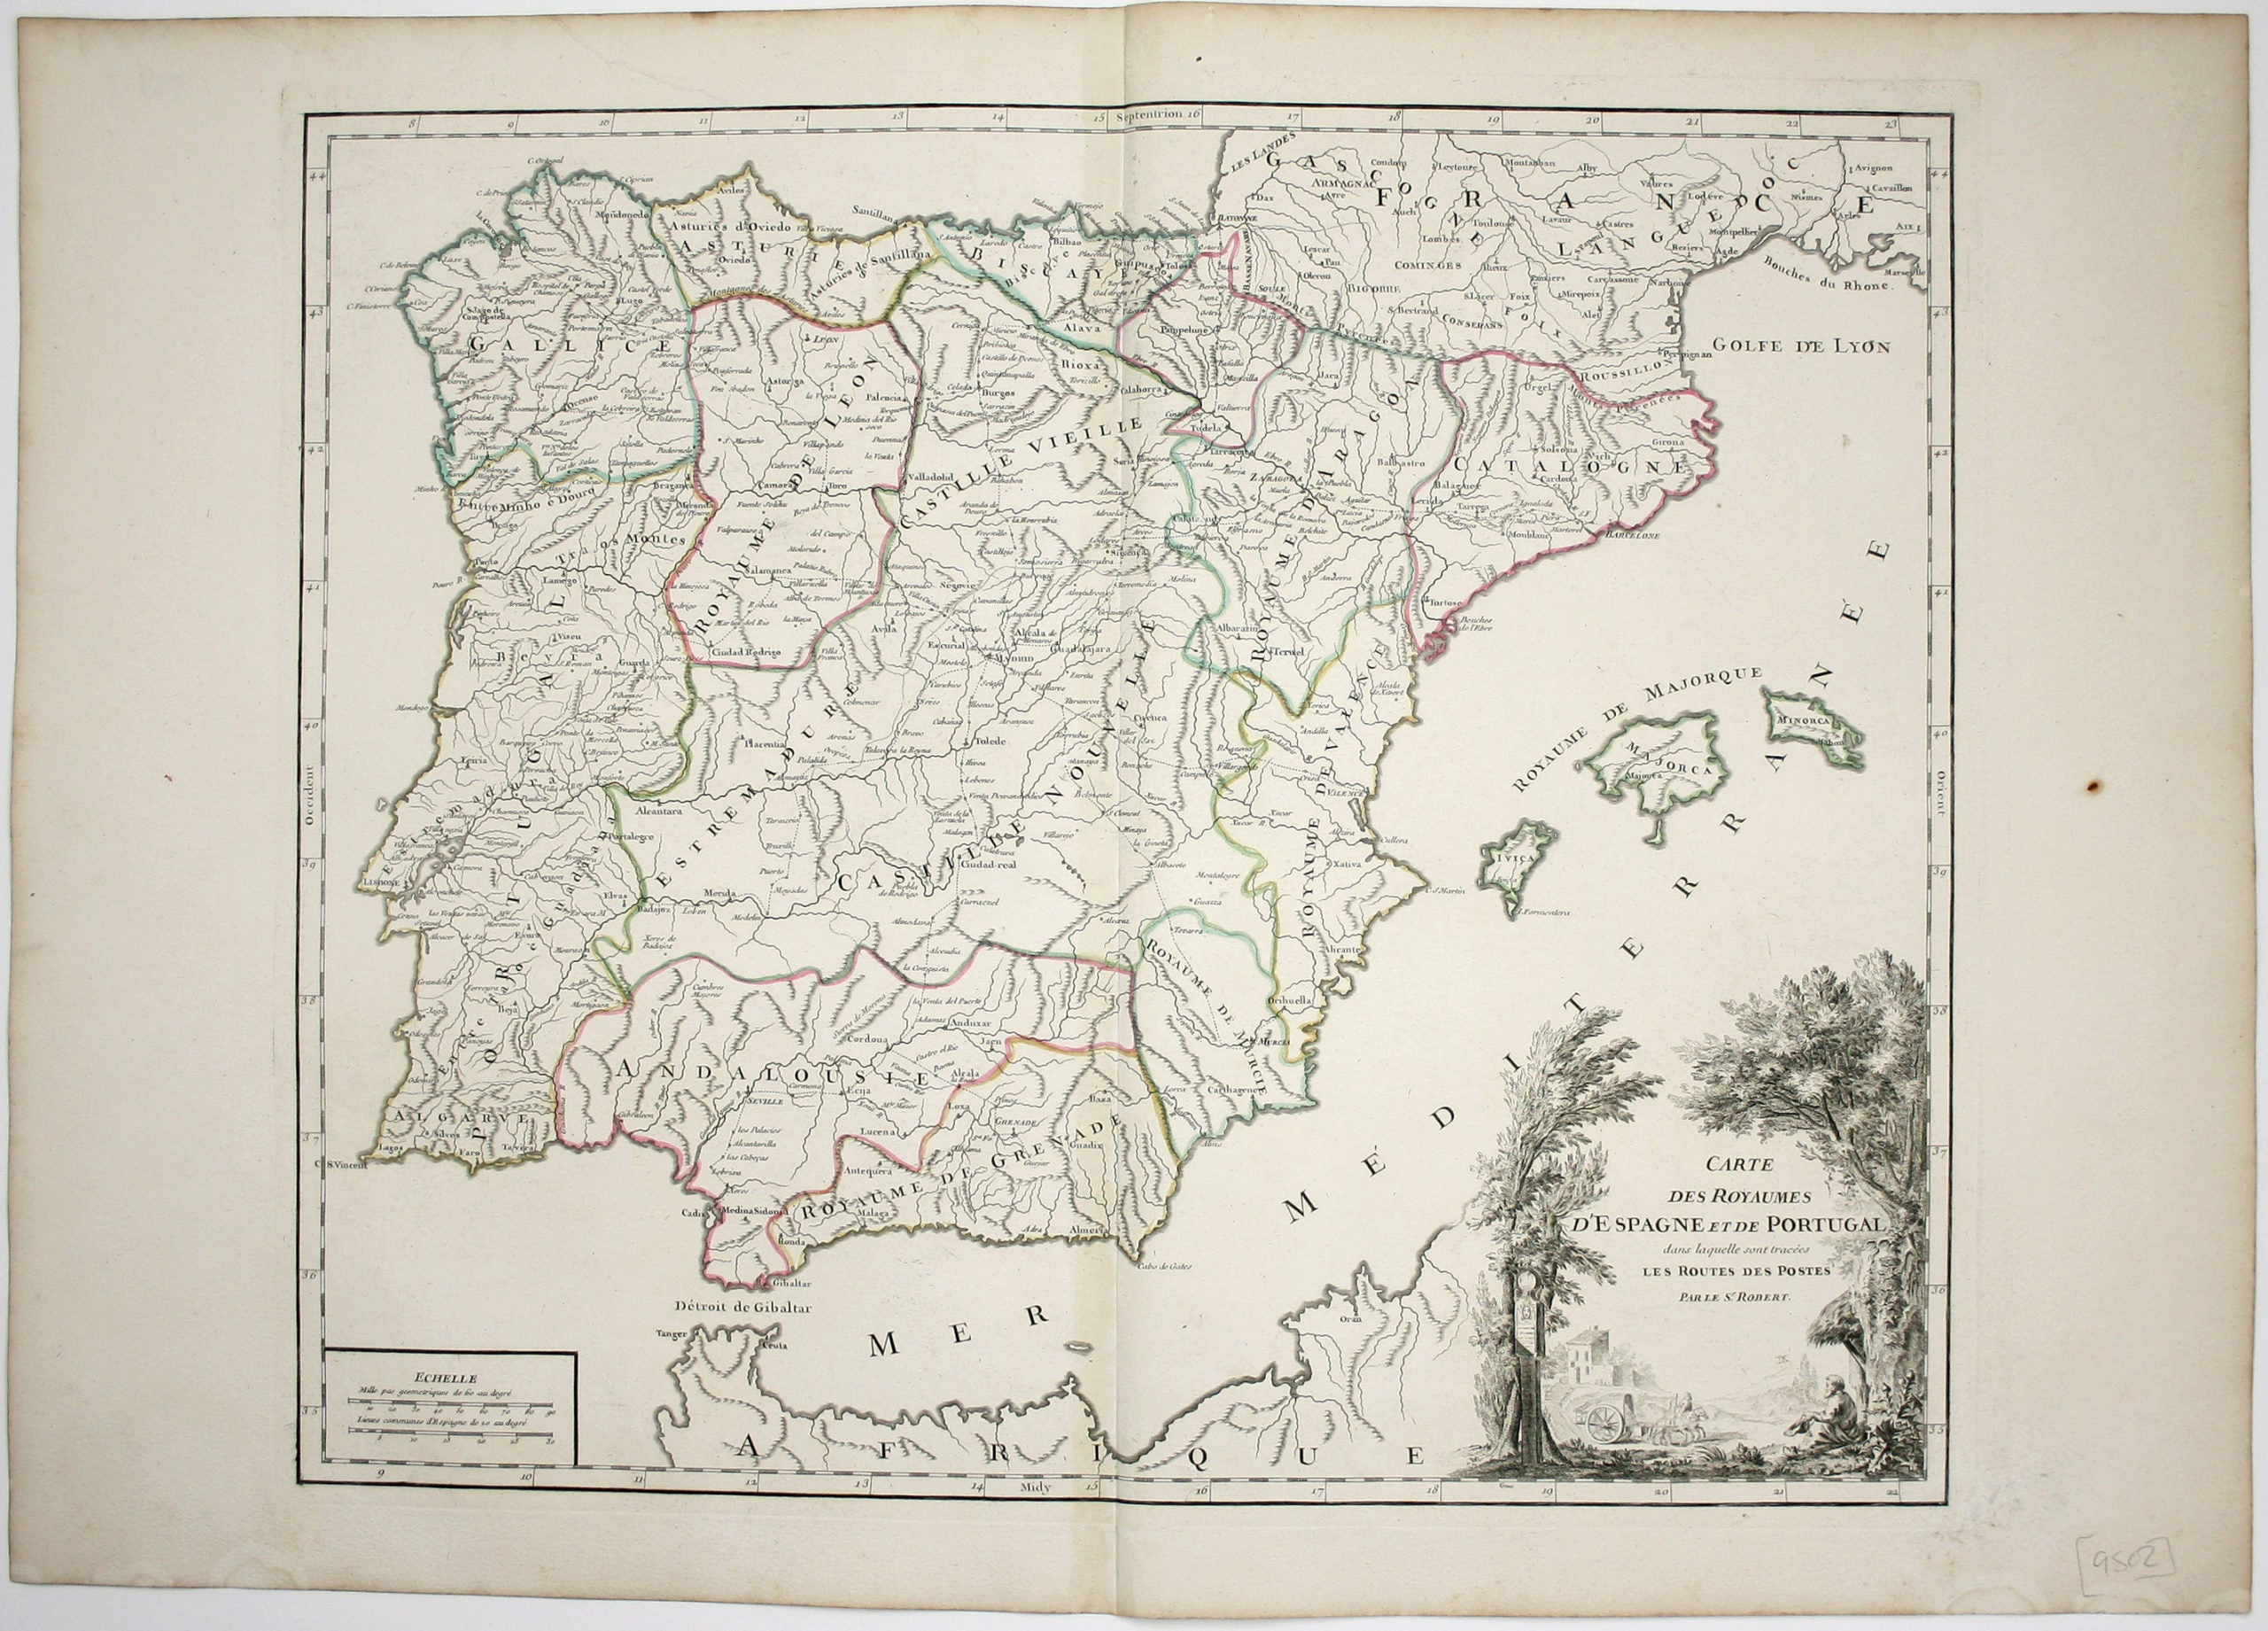 Robert de Vaugondy’s Map of Spain & Portugal, Showing Roads